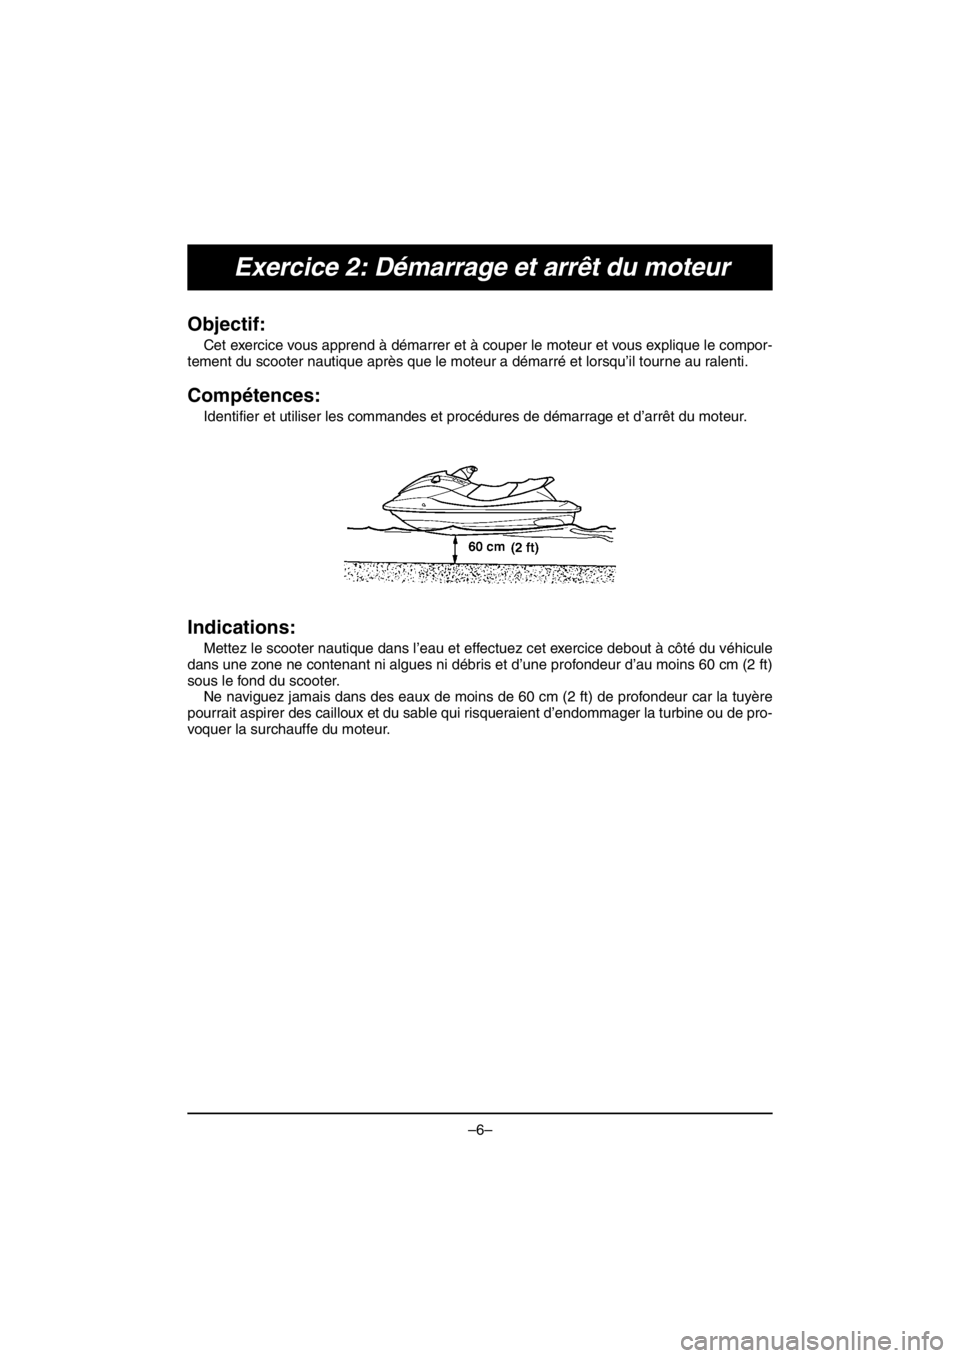 YAMAHA V1 2016  Notices Demploi (in French) –6–
Exercice 2: Démarrage et arrêt du moteur
Objectif: 
Cet exercice vous apprend à démarrer et à couper le moteur et vous explique le compor-
tement du scooter nautique après que le moteur 